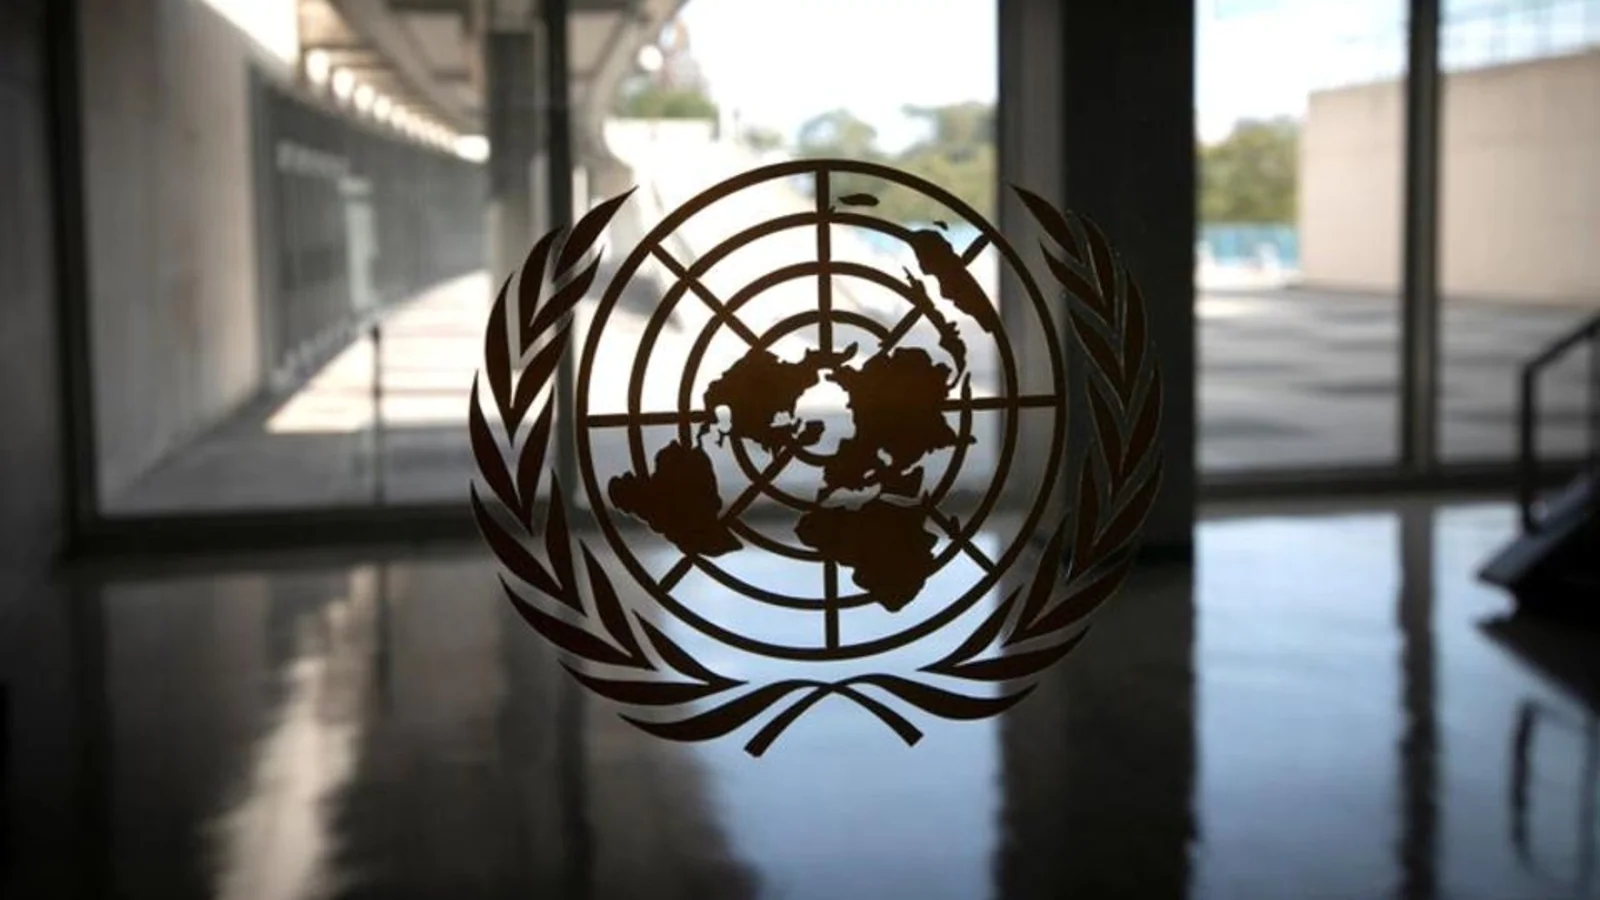 India calls for urgent reform of UN Security Council